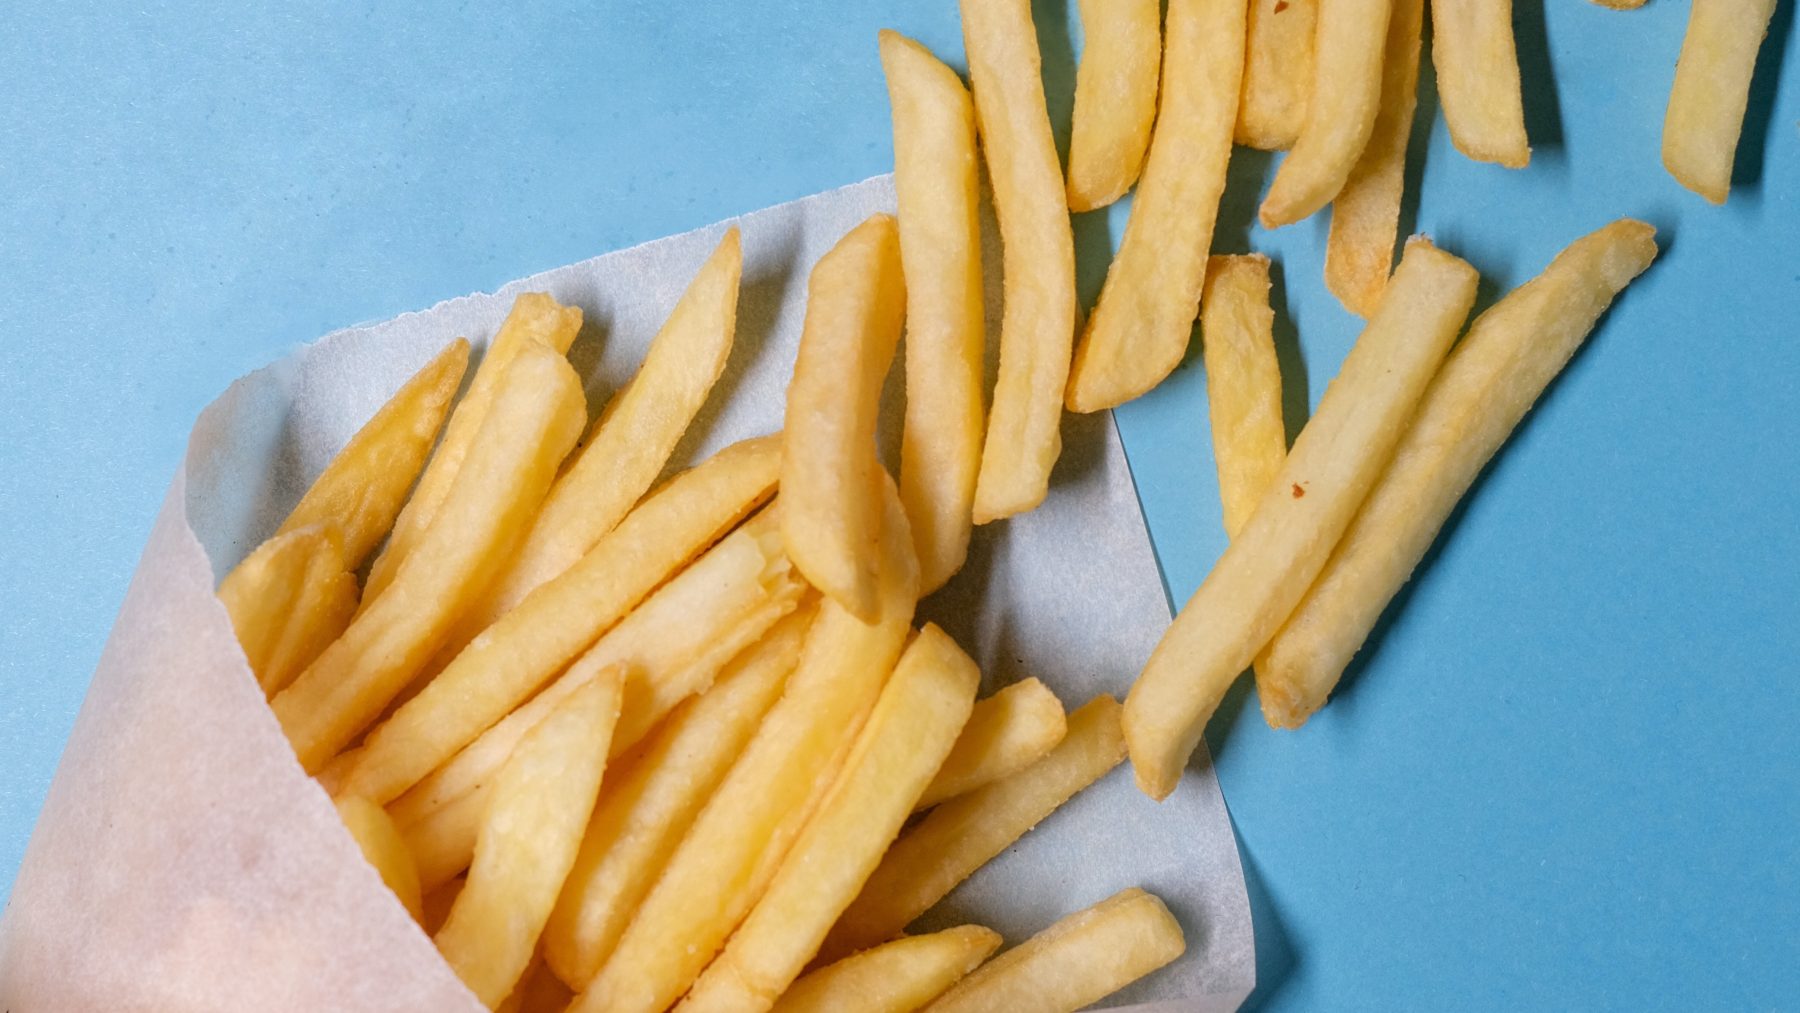 Dure snack: prijzen patat en chips stijgen door aanhoudende droogte